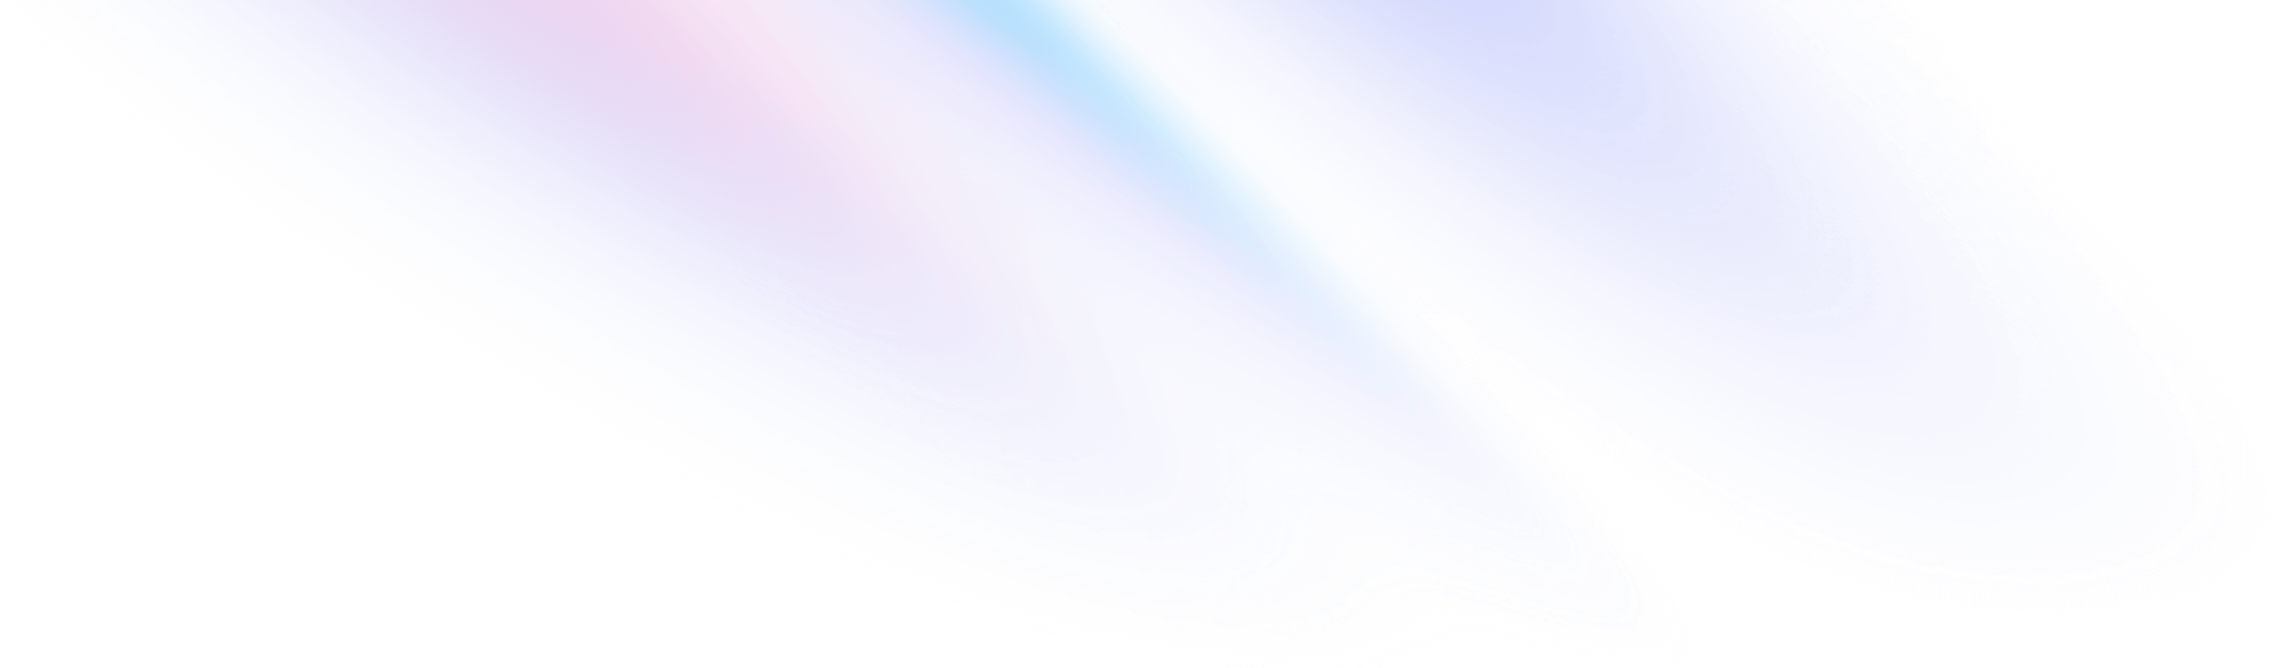 background gradient